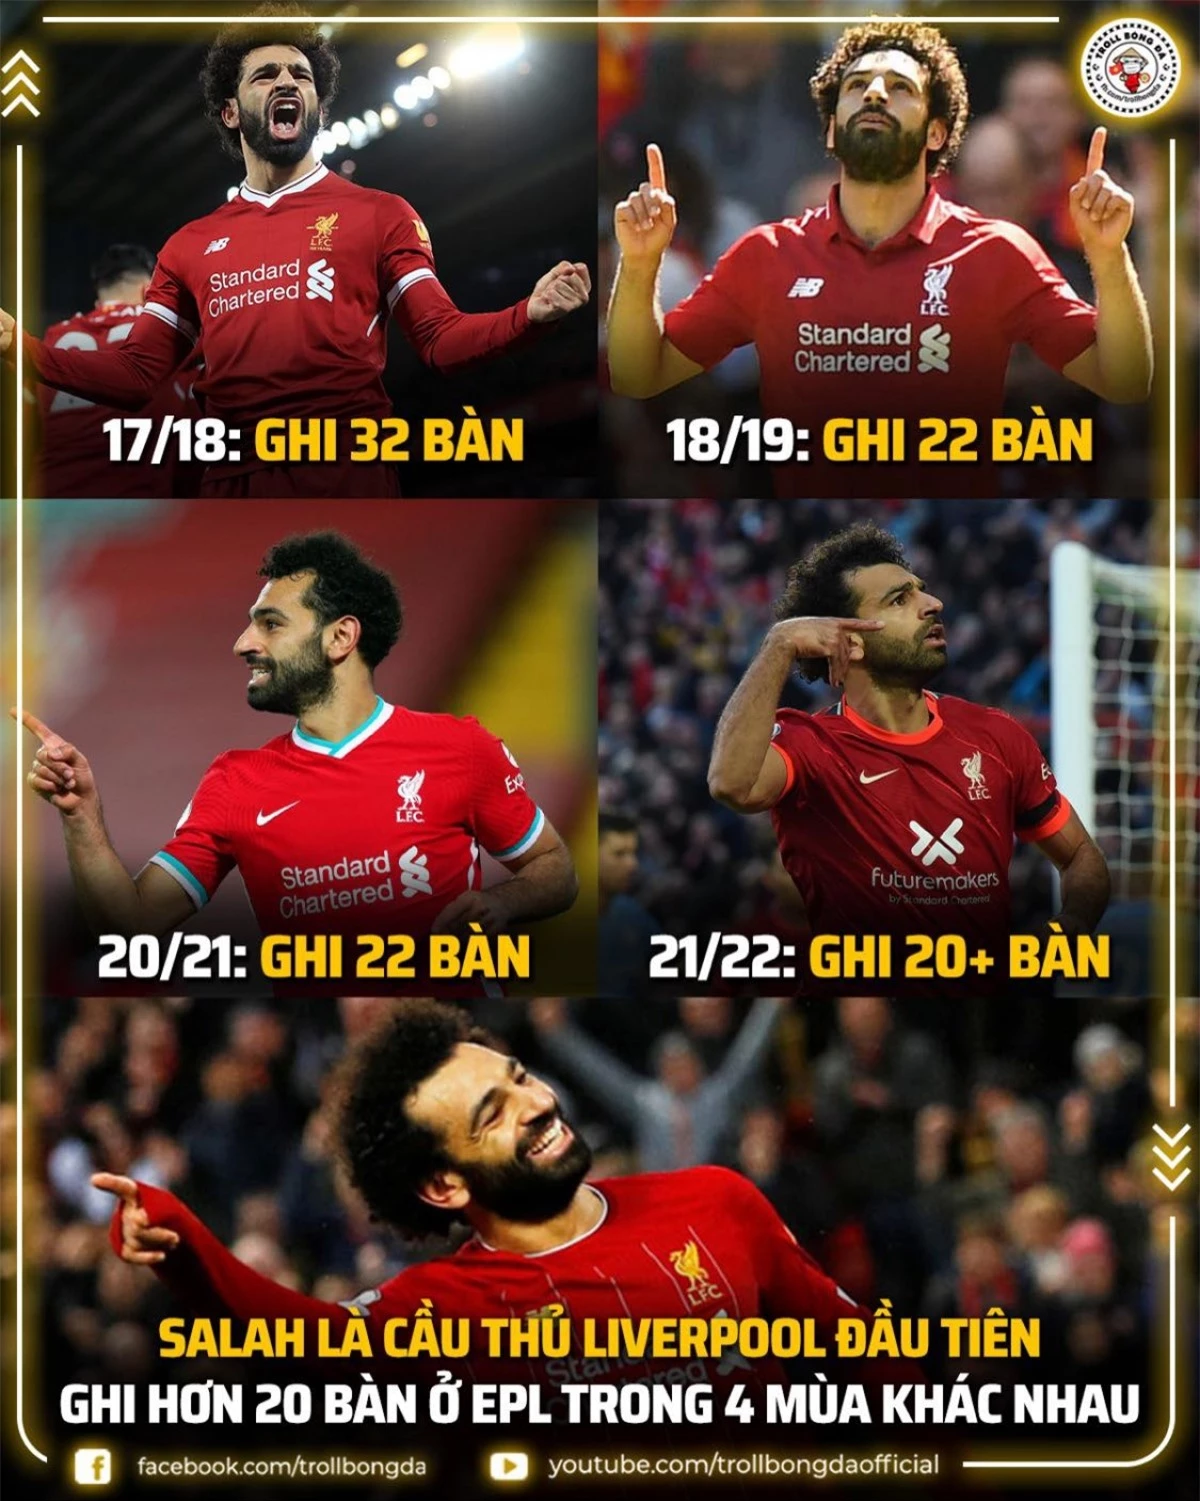 Salah duy trì thành tích ghi bàn ấn tượng ở Liverpool. (Ảnh: Troll Bóng đá).